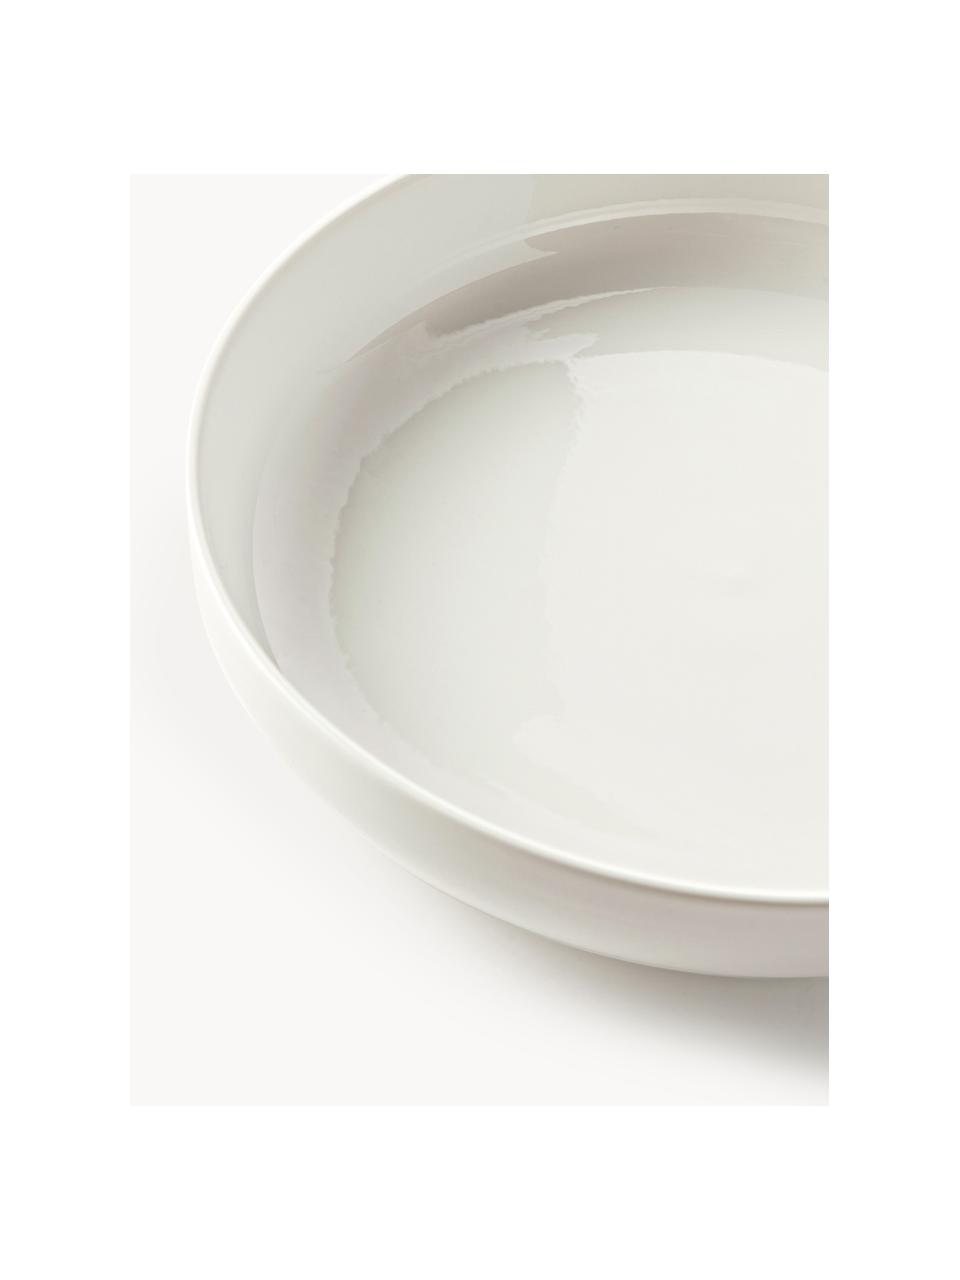 Platos hondos de porcelana Nessa, 2 uds., Porcelana dura de alta calidad, Off White brillante, Ø 21 cm